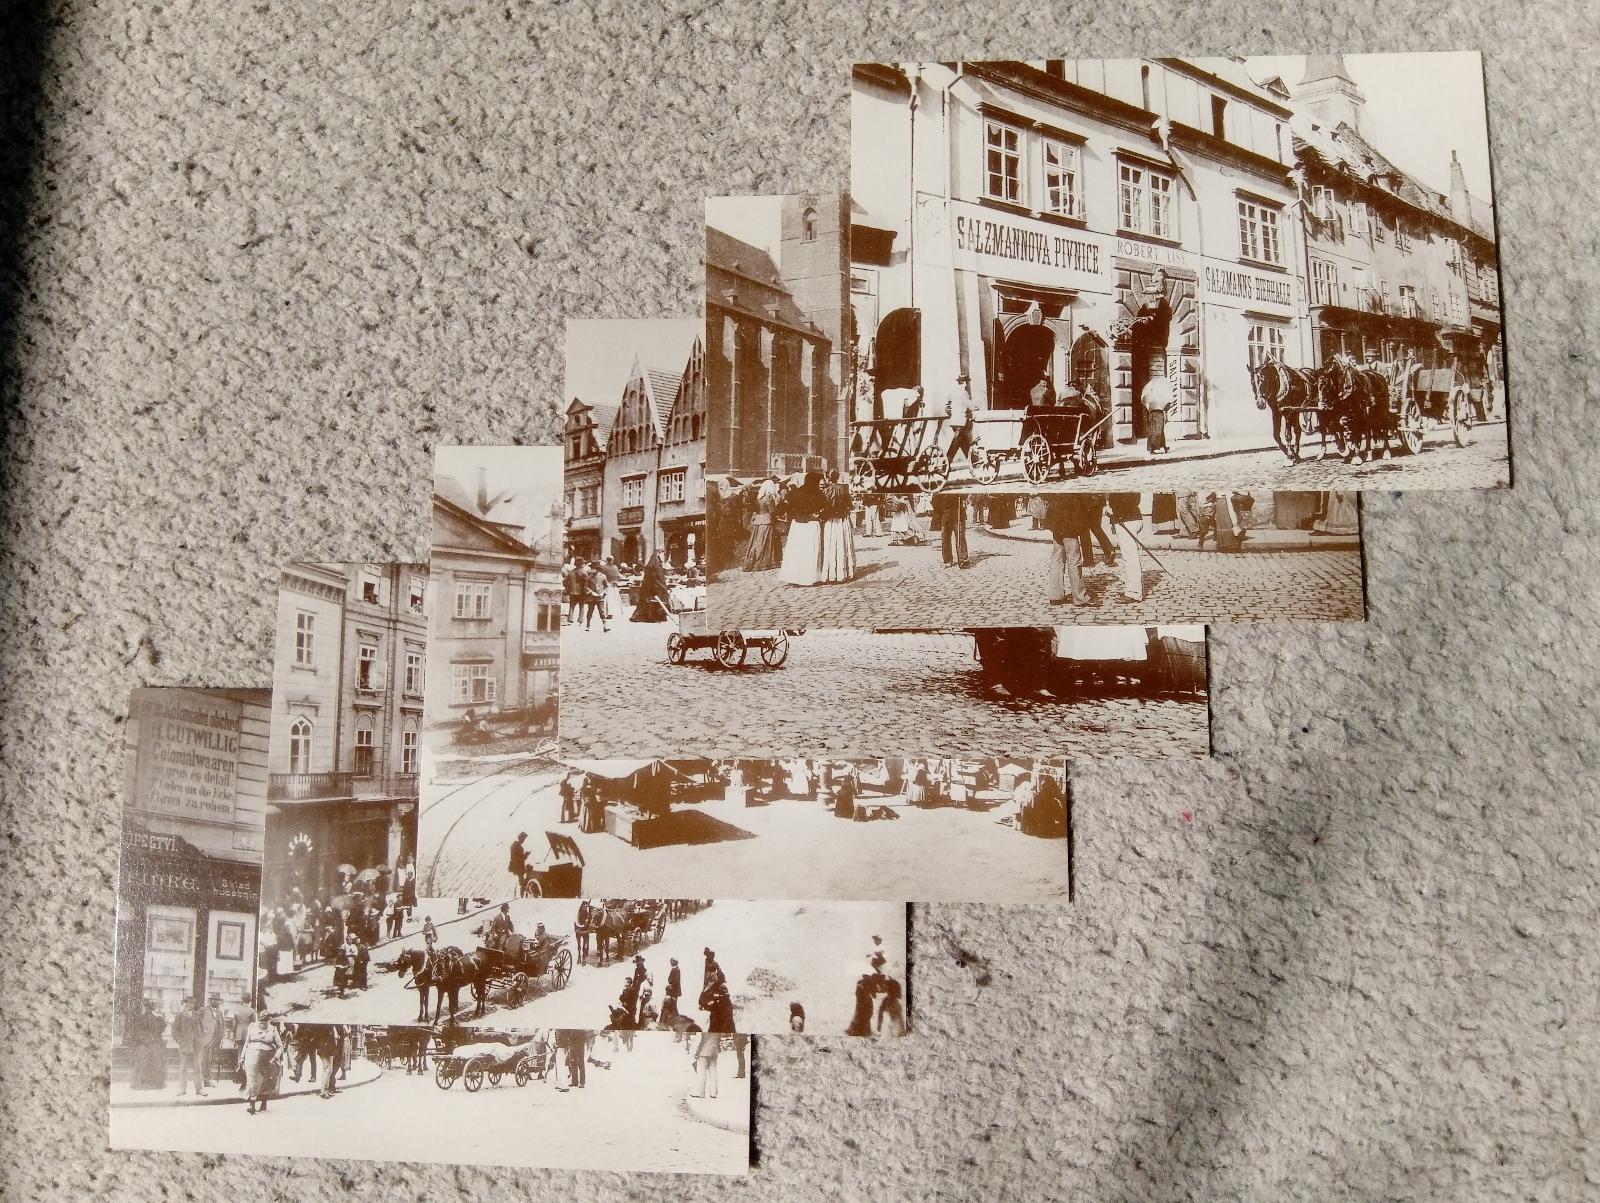 Súbor pohľadníc PLZEŇ z archívu Vladislava Vítka - Pohľadnice miestopis